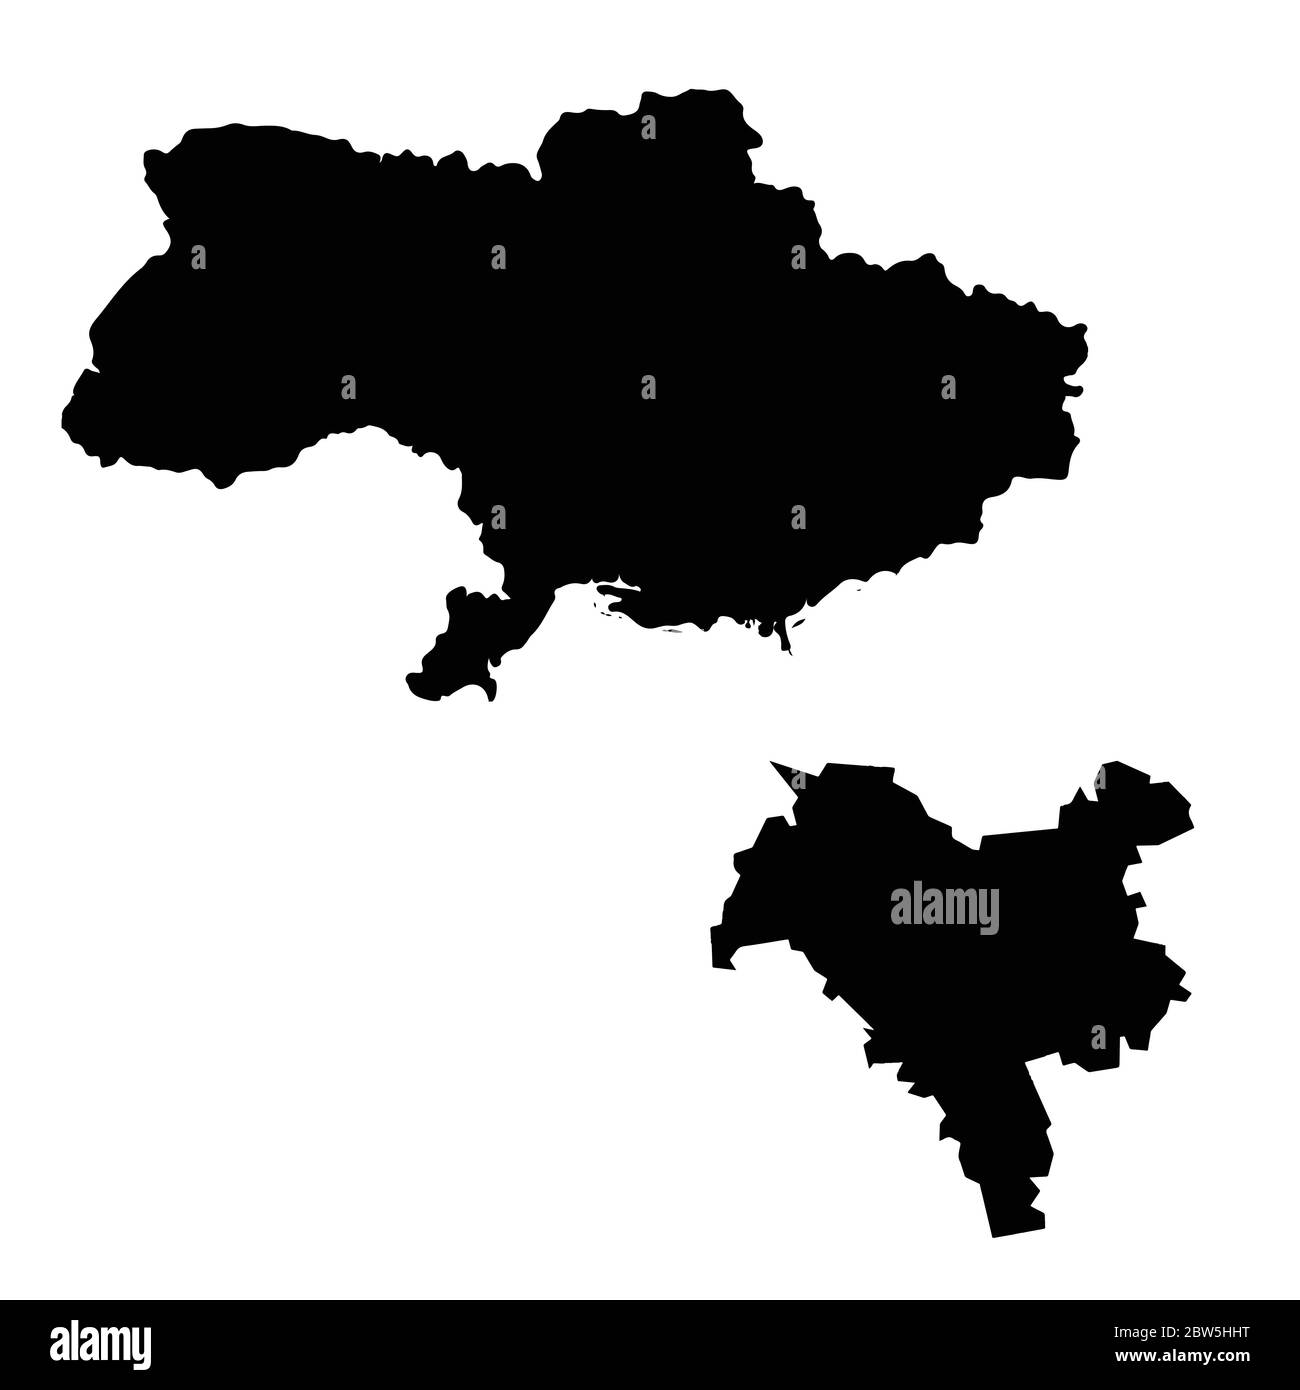 Vektorkarte Ukraine und Kiew. Land und Hauptstadt. Isolierte Vektorgrafik. Schwarz auf weißem Hintergrund. EPS 10-Abbildung. Stock Vektor